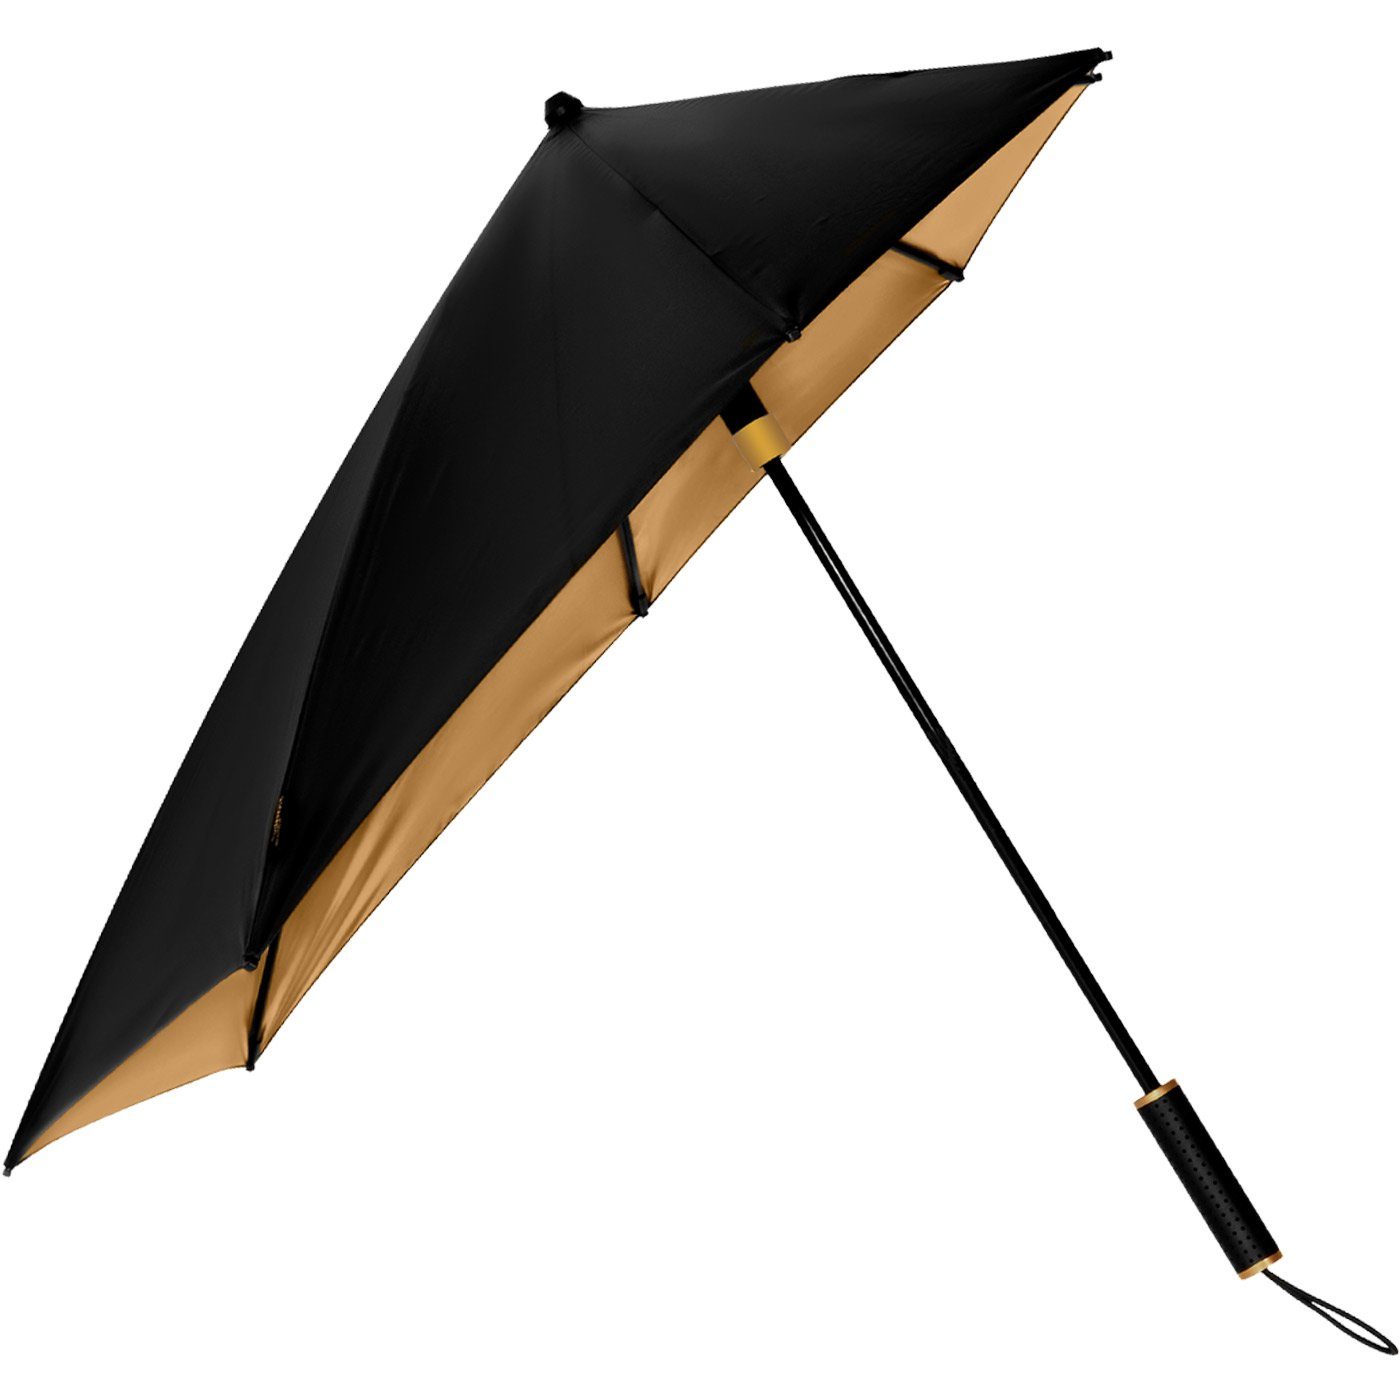 Stockregenschirm hält aus Wind, Metallic, den Sturmschirm zu km/h durch 80 Form sich aerodynamischer schwarz-gold in dreht Schirm besondere seine der Impliva STORMaxi bis